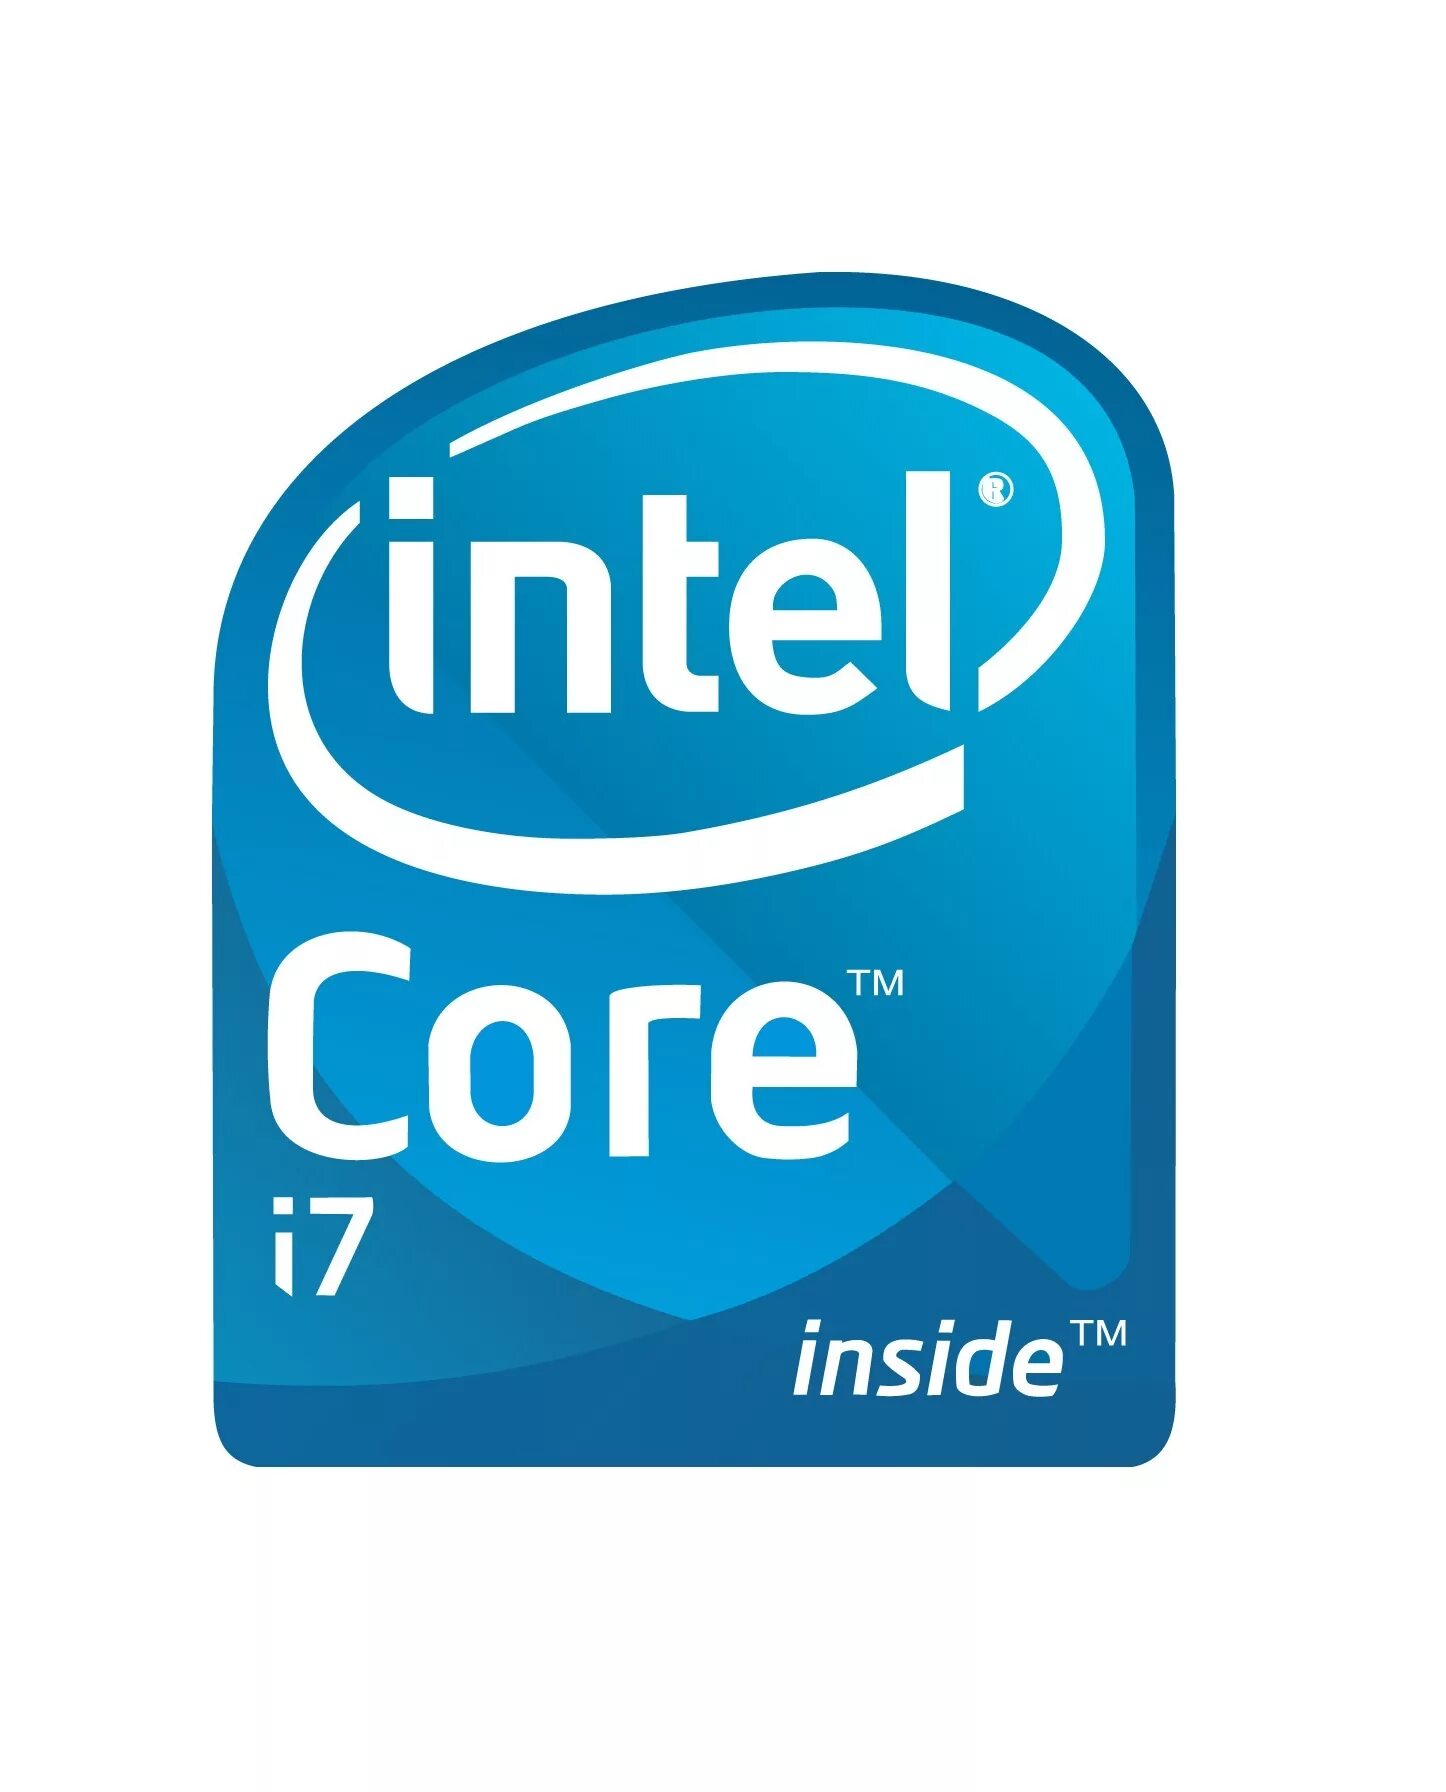 Reg intel. Процессор Intel Core i7 logo. Процессор Intel Xeon e5-2699v4. Intel Xeon логотип. Intel Core i7 икон.